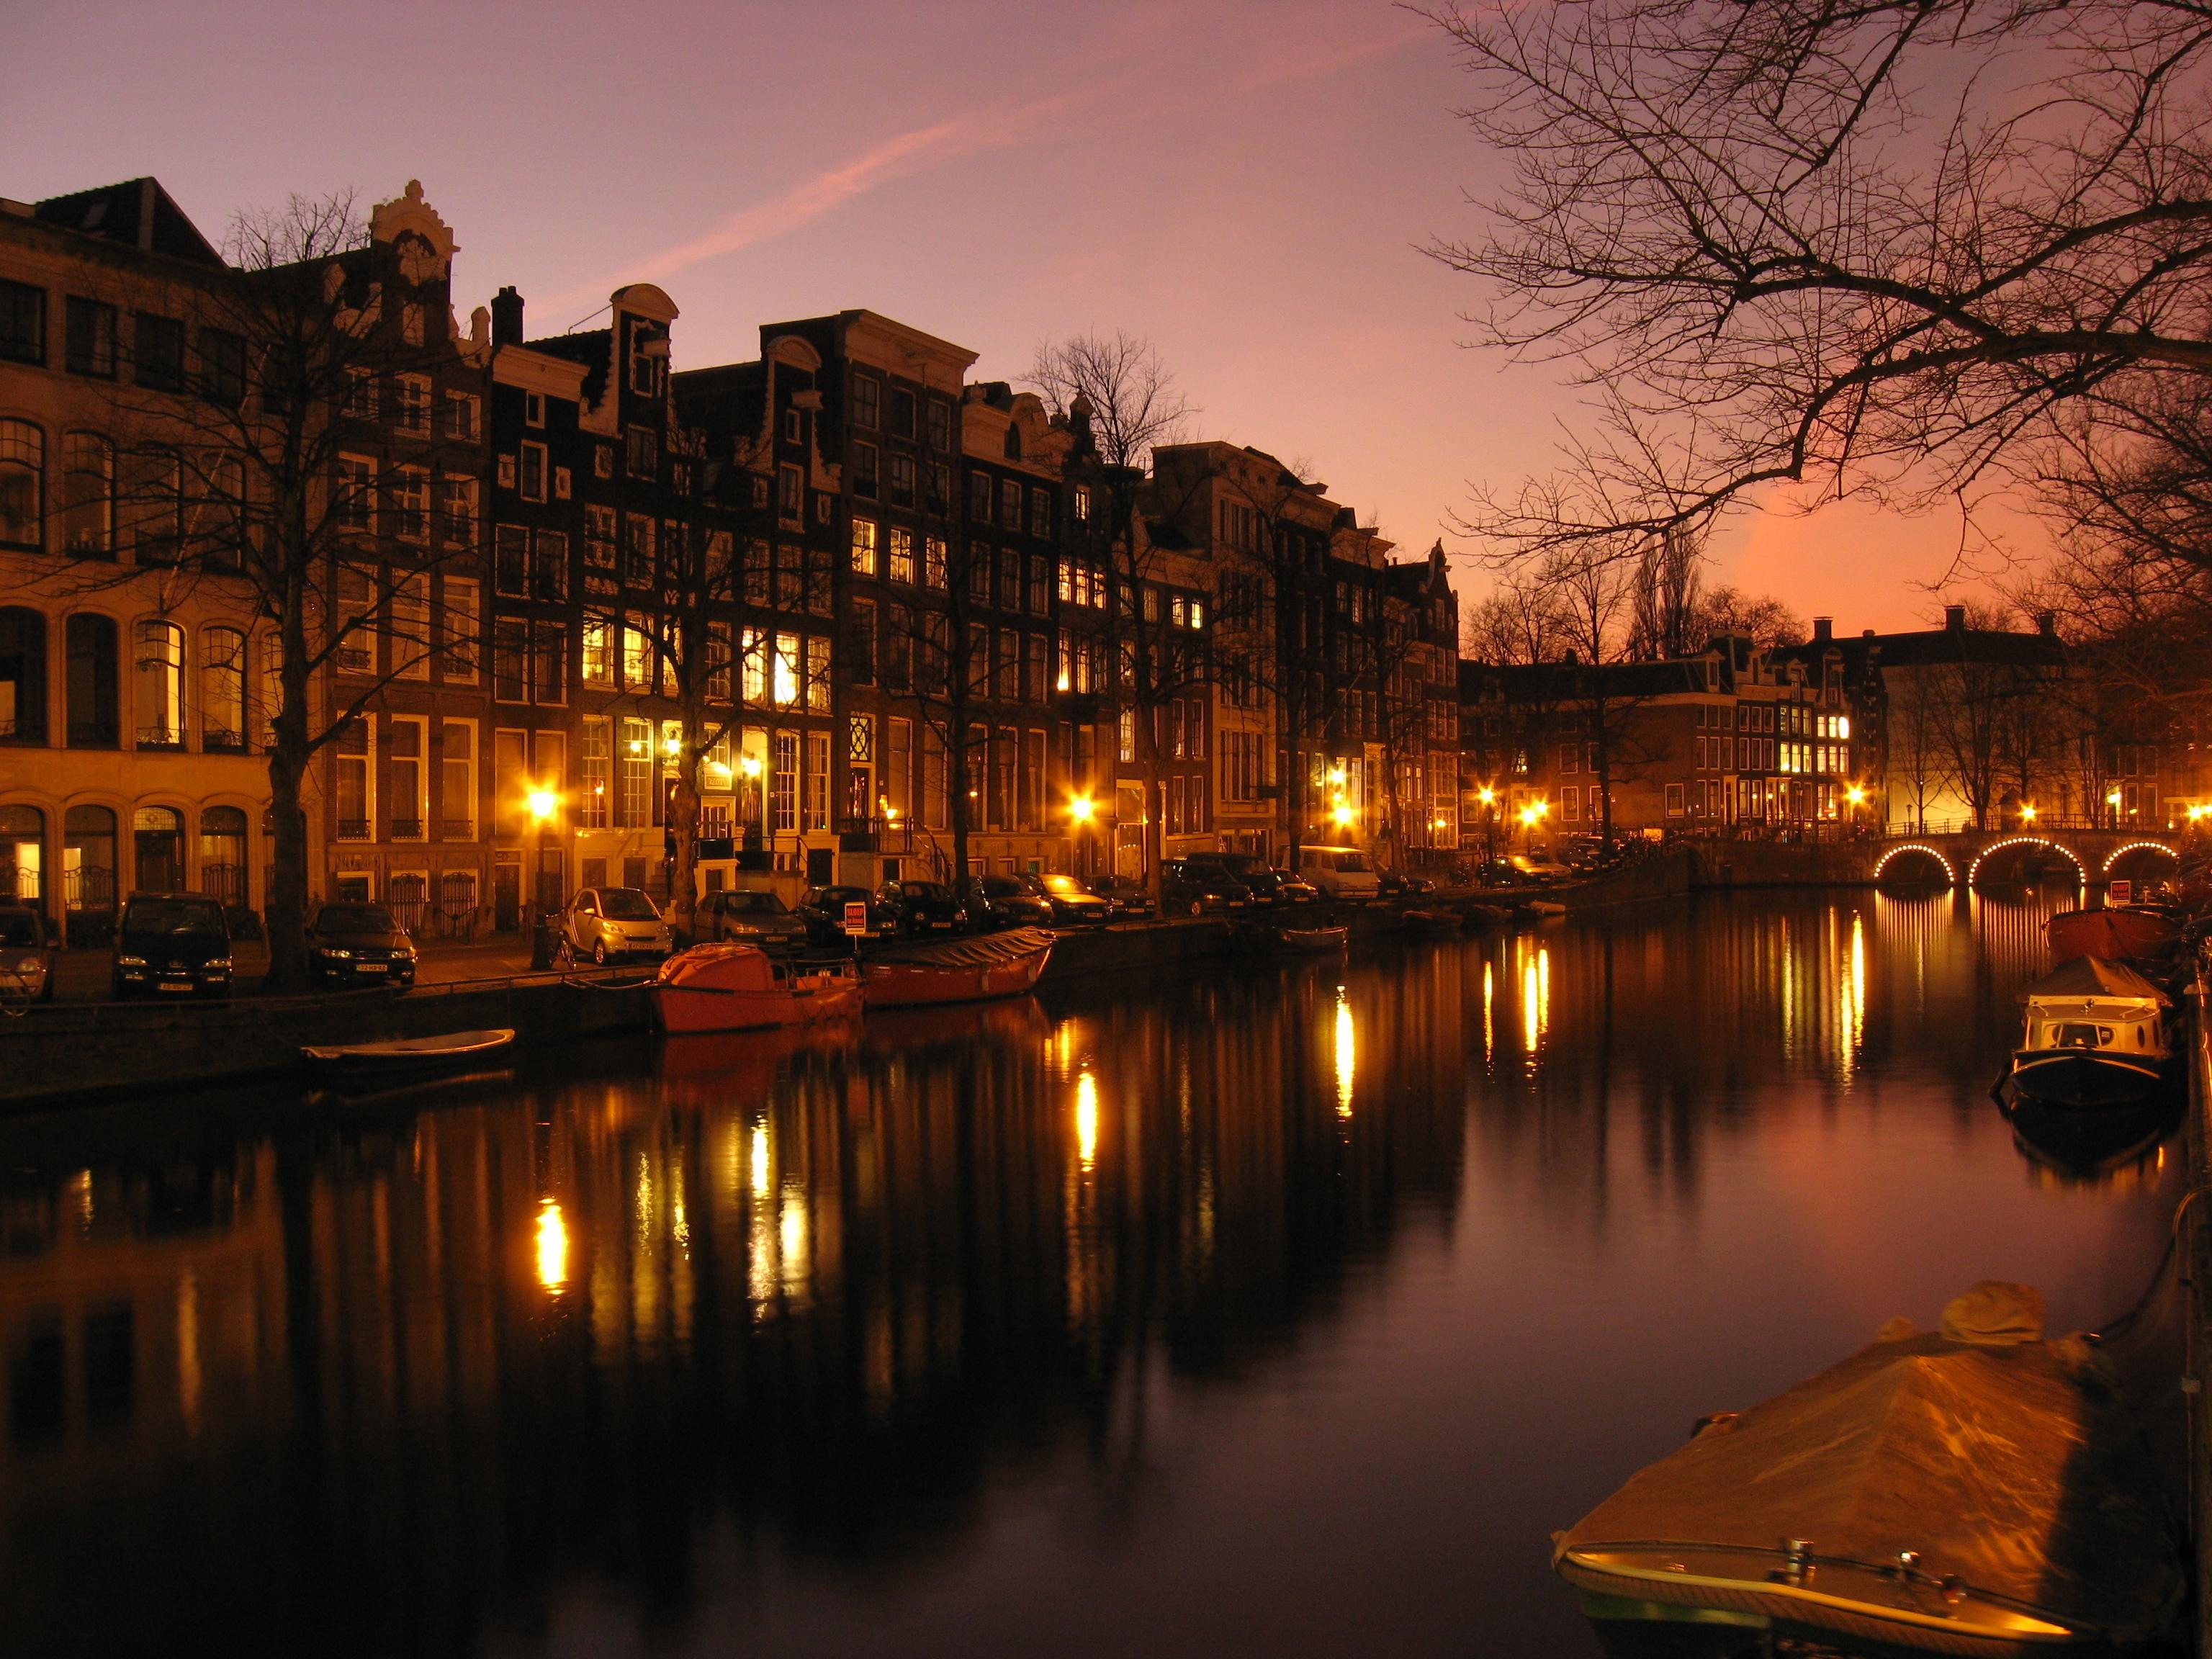 Фото Принсенграхт. Каналы Амстердама